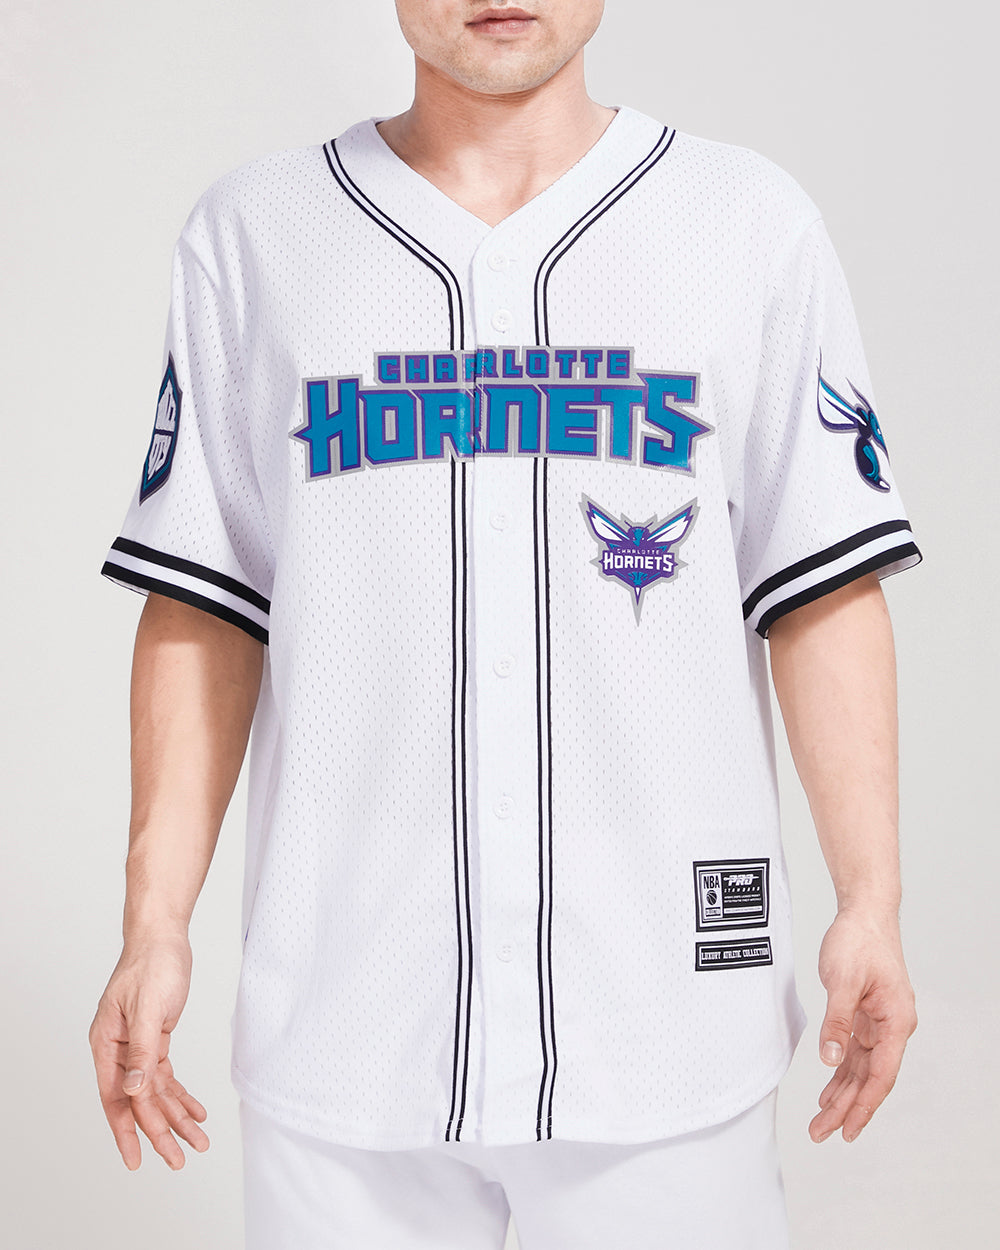 Pro Standard Hornets Cream T-Shirt